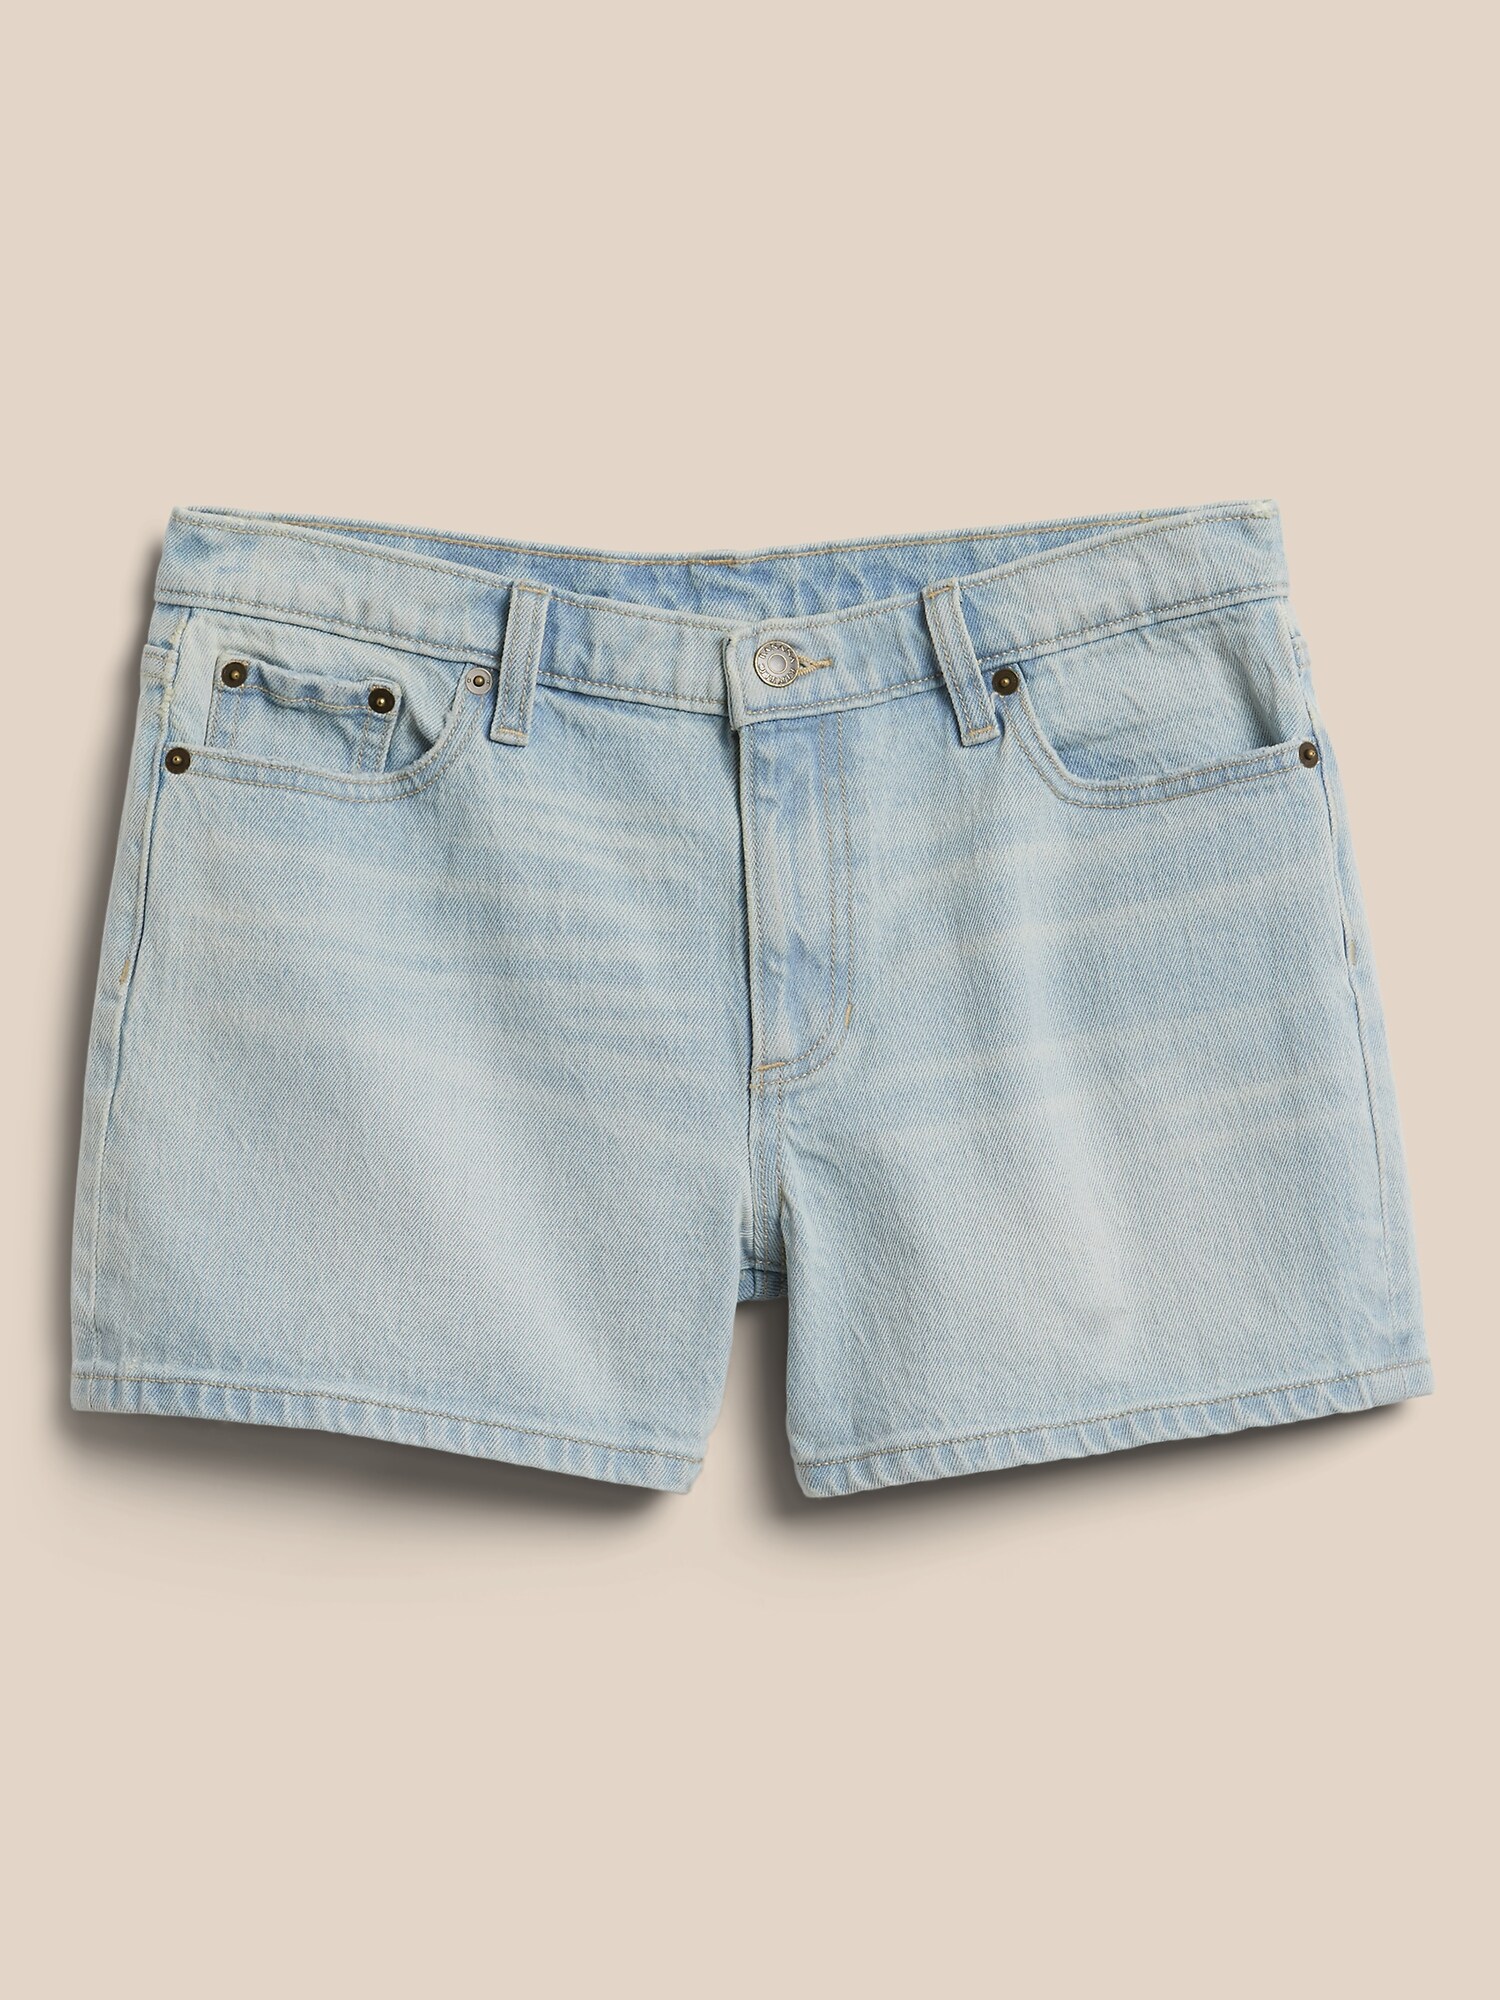 SODIAL R Short dete en jean Short svelte fit de couleur bonbon short court en Jeans de femme shorts de denim blanc S = 26